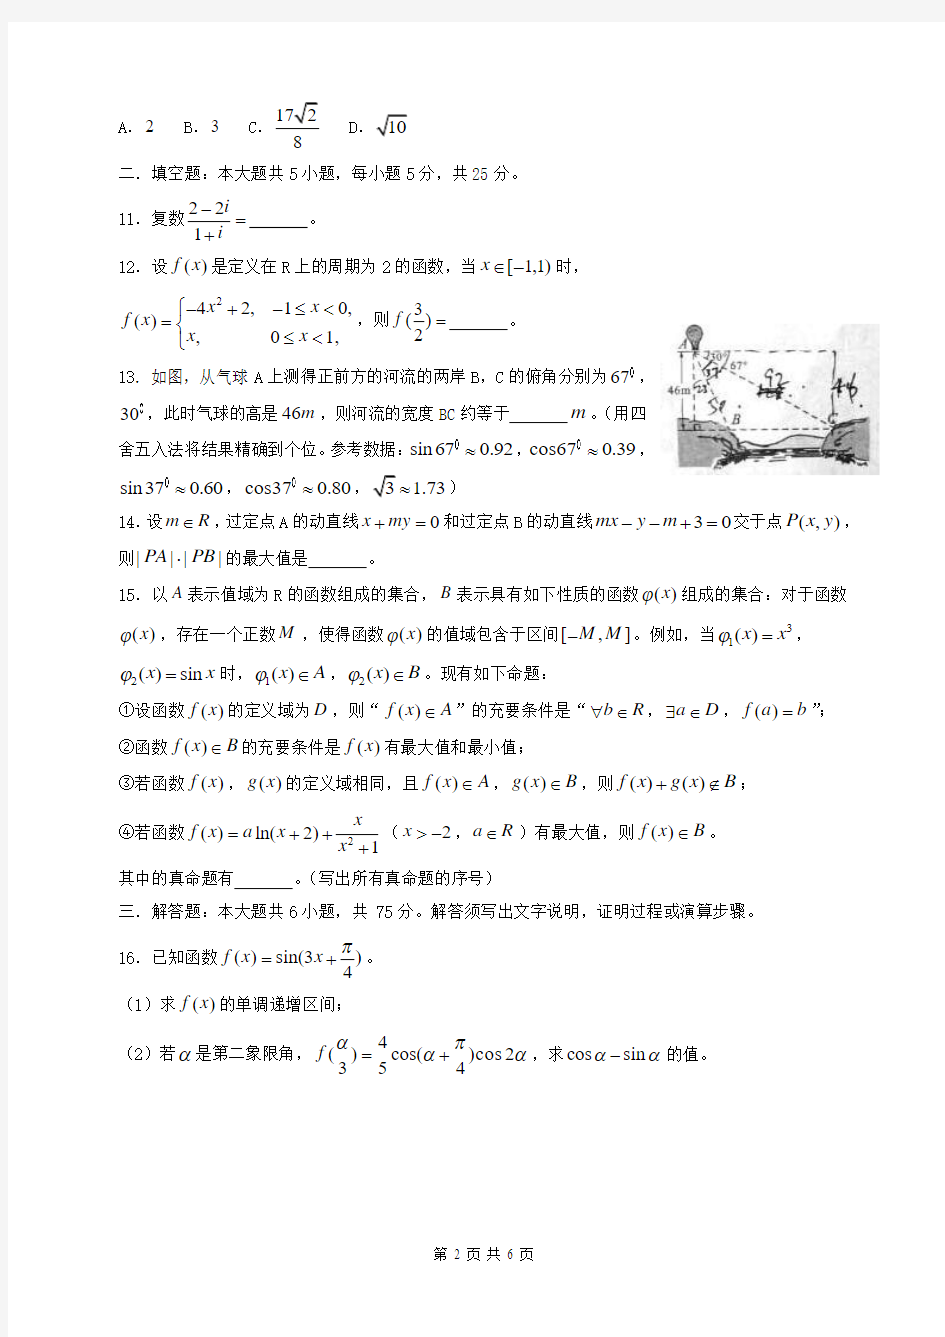 2014年全国高考理科数学试题-四川卷